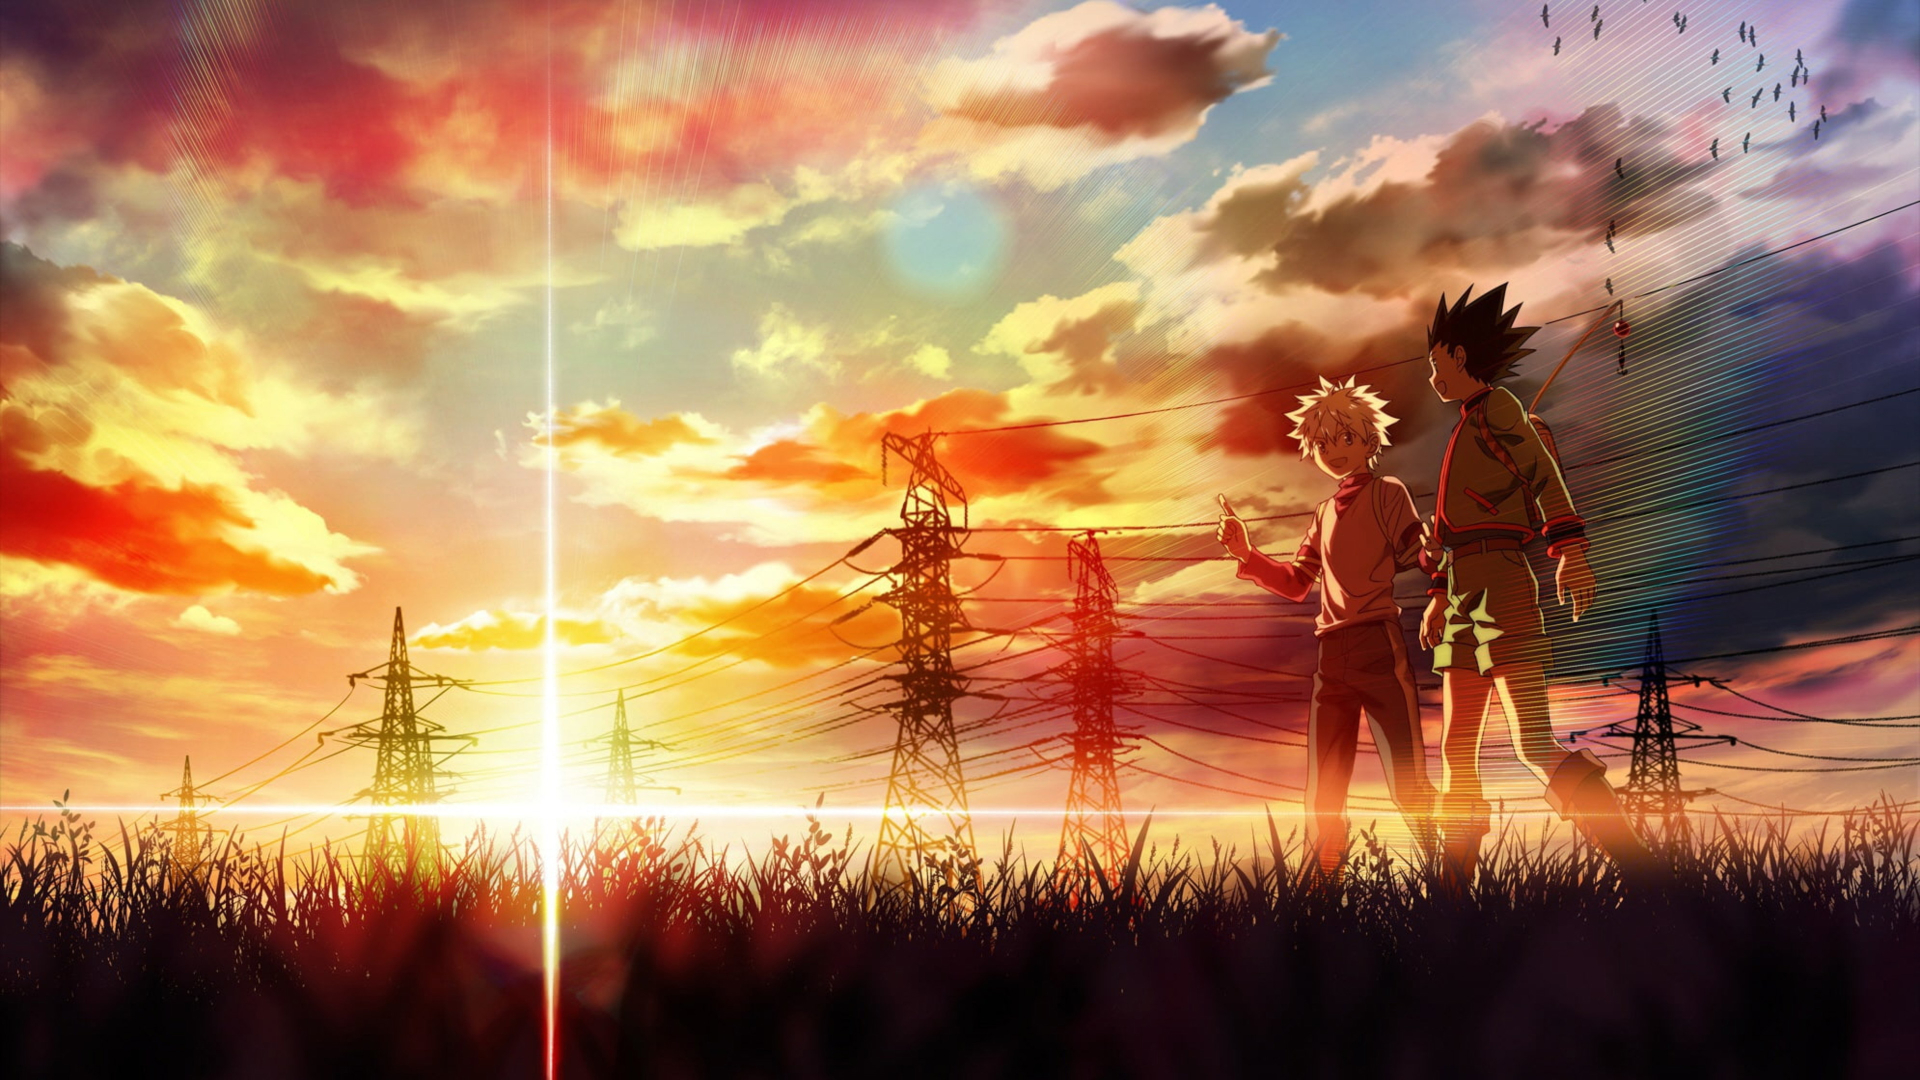 1920X1080 Resolution Gon And Killua Walking At A Beautiful Sunset 1080P